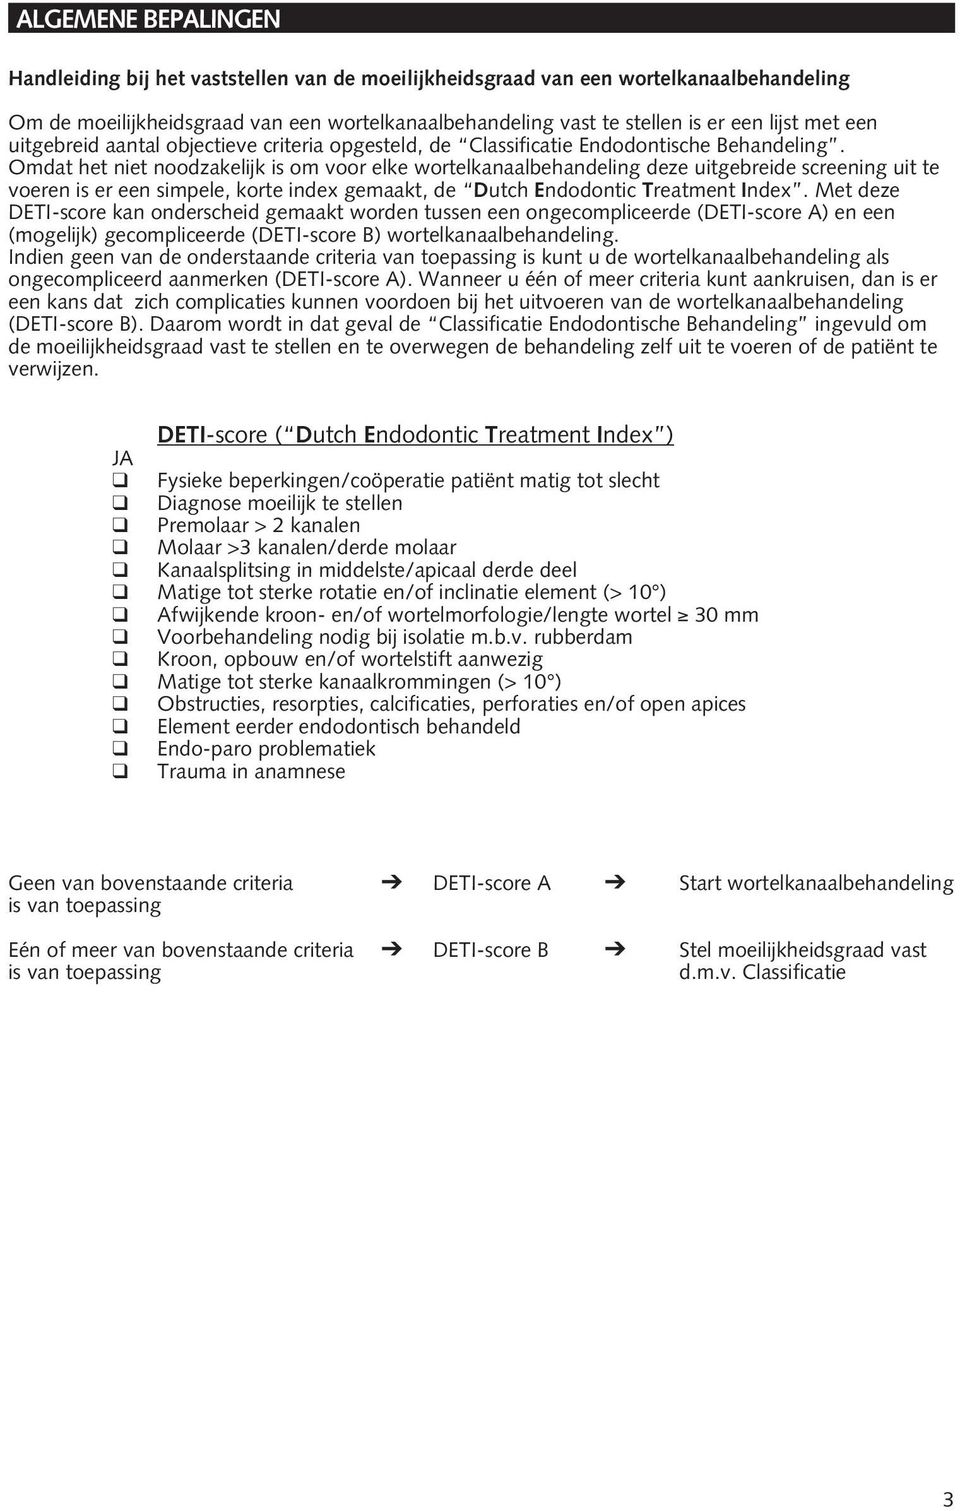 Omdat het niet noodzakelijk is om voor elke wortelkanaalbehandeling deze uitgebreide screening uit te voeren is er een simpele, korte index gemaakt, de Dutch Endodontic Treatment Index.